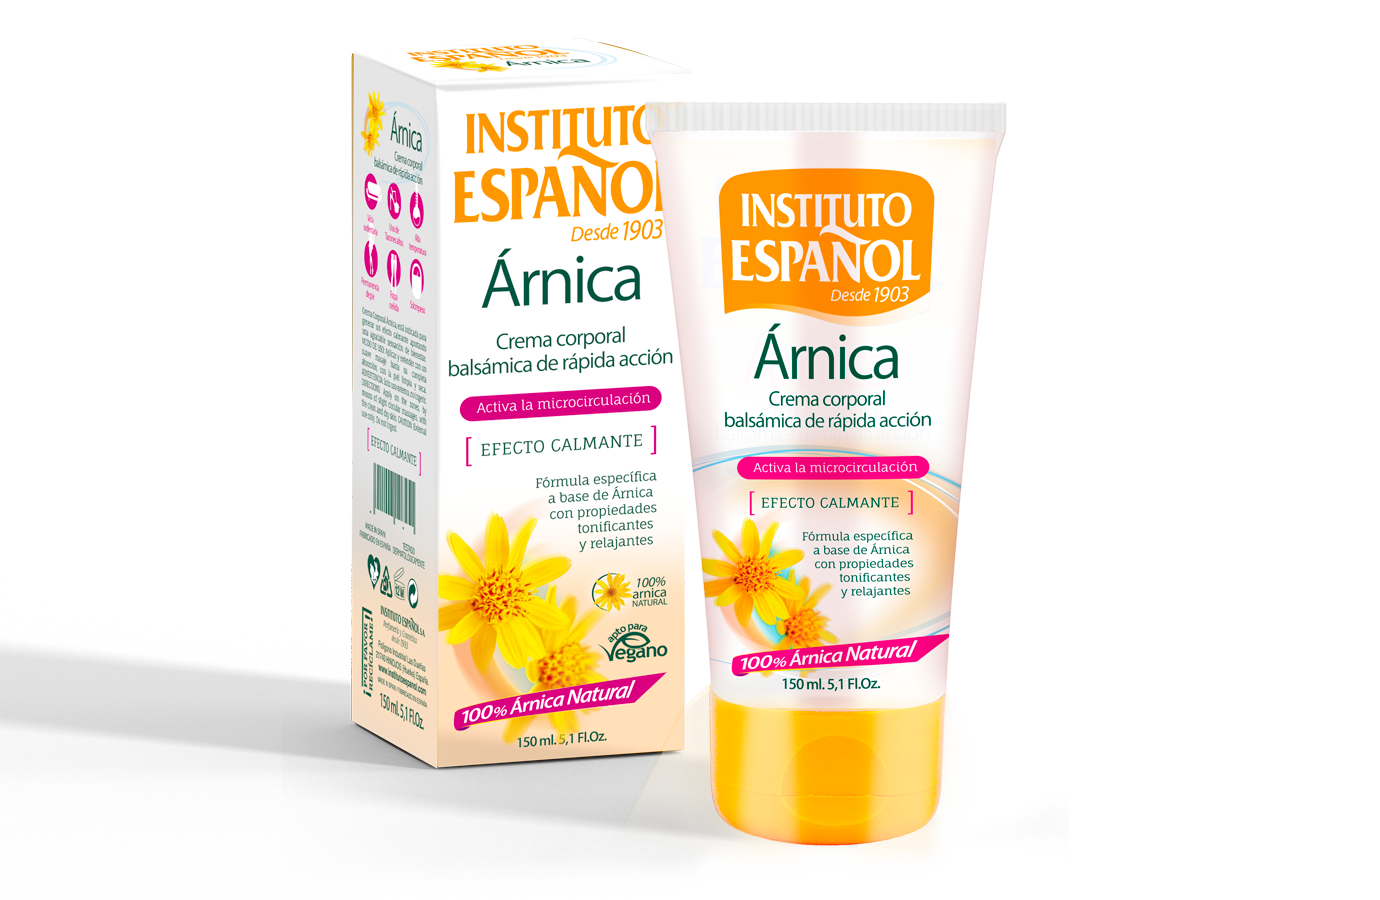 arnica cream - Instituto Español